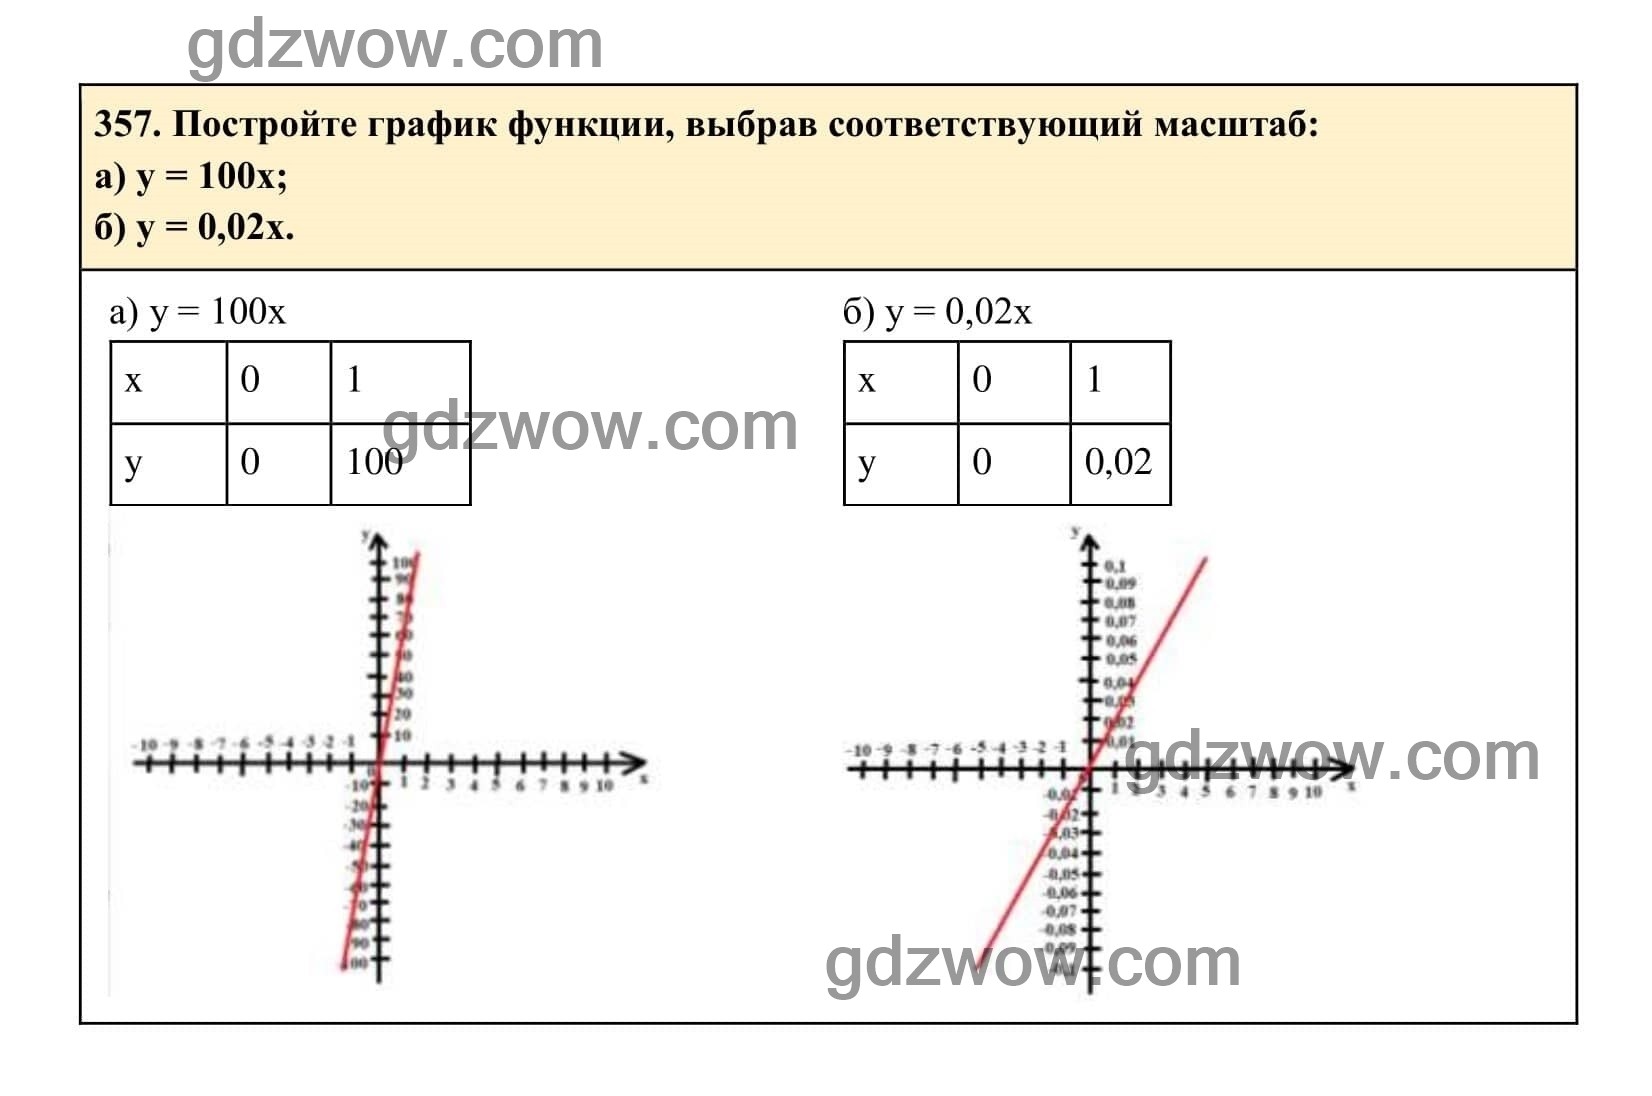 Упражнение 357 - ГДЗ по Алгебре 7 класс Учебник Макарычев (решебник) - GDZwow